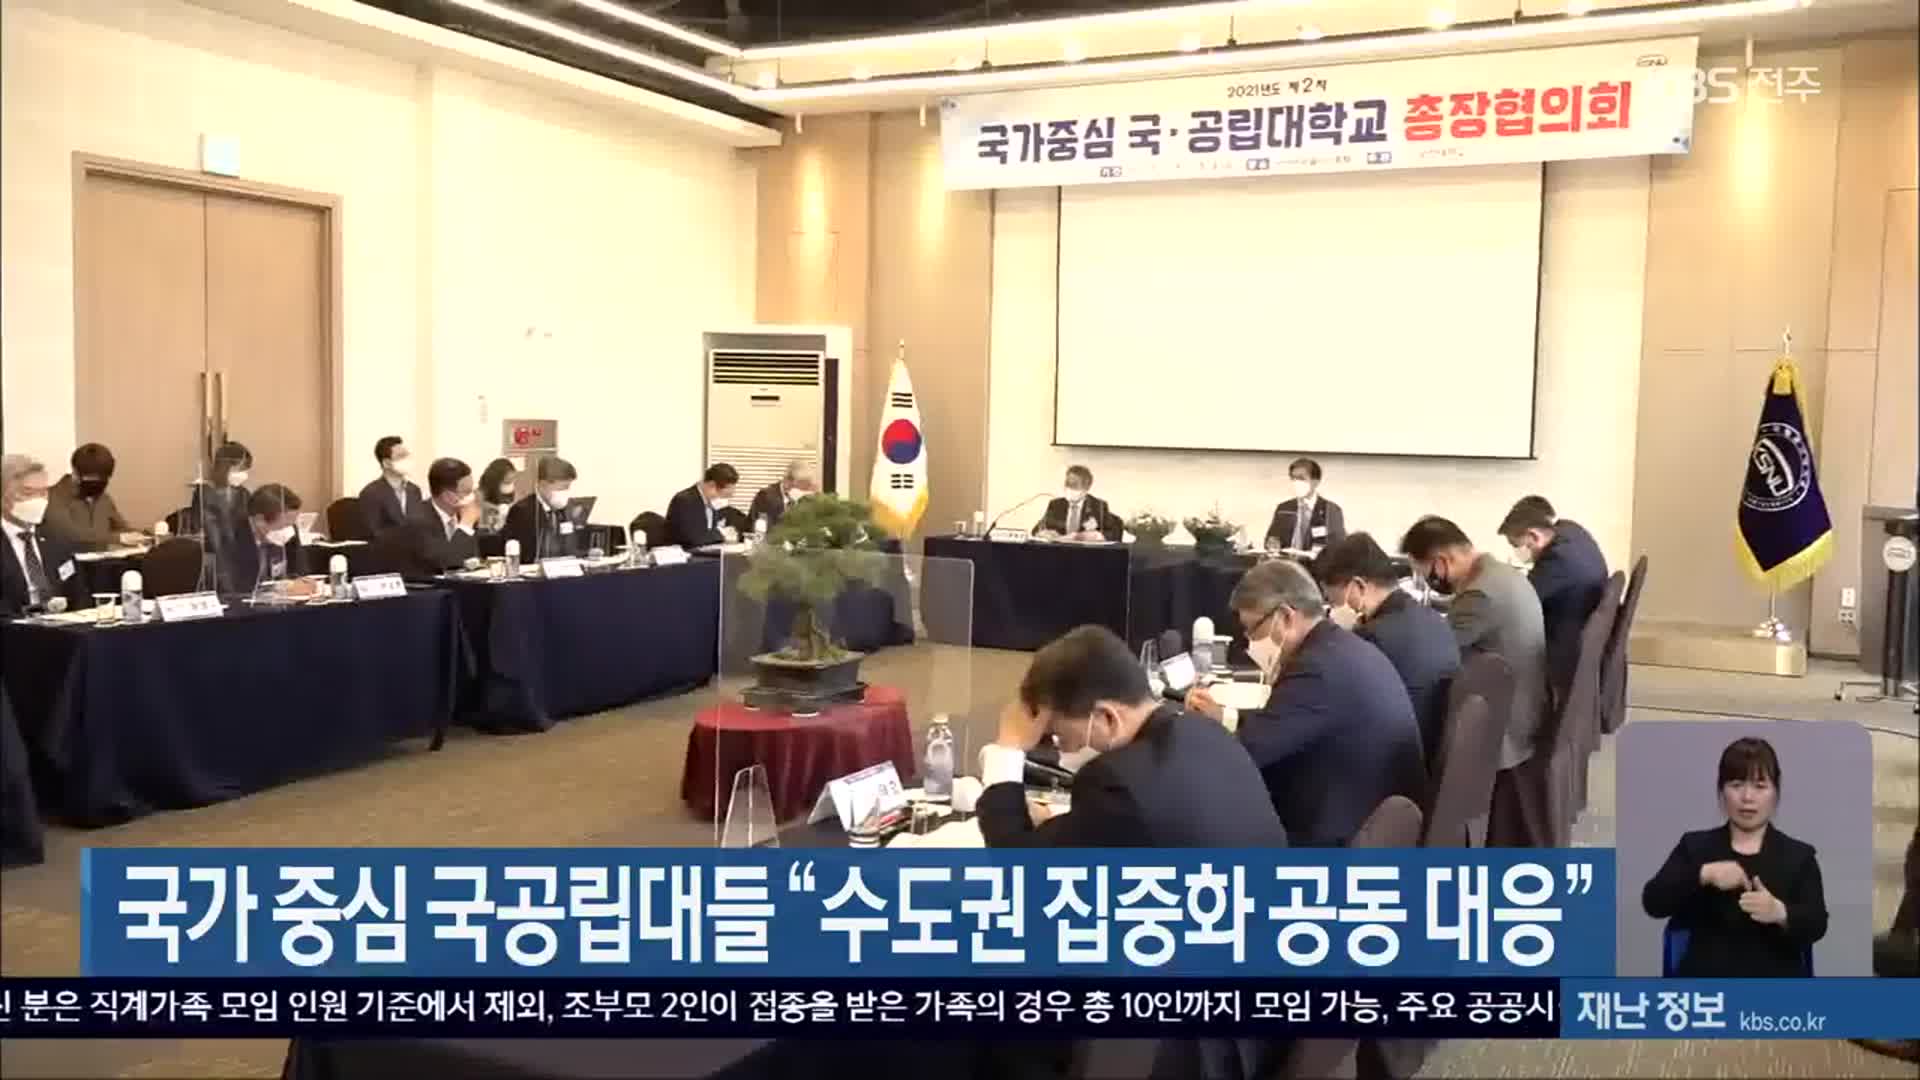 국가 중심 국공립대들 “수도권 집중화 공동 대응”